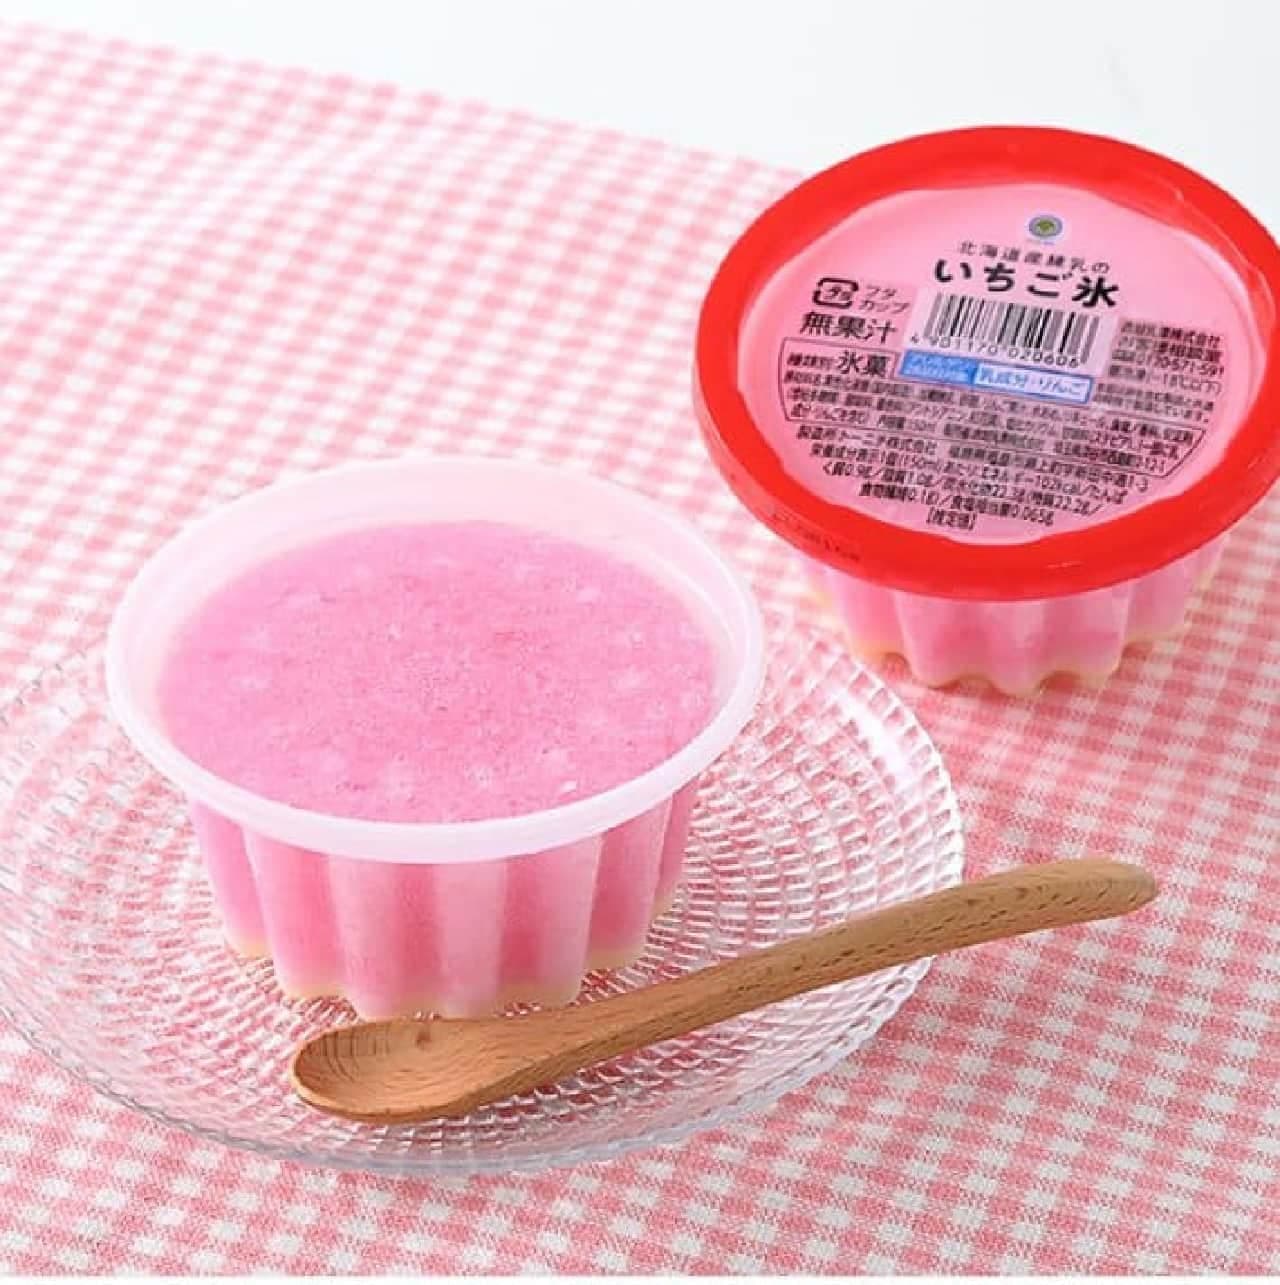 ファミリーマート「北海道産練乳のいちご氷カップ」